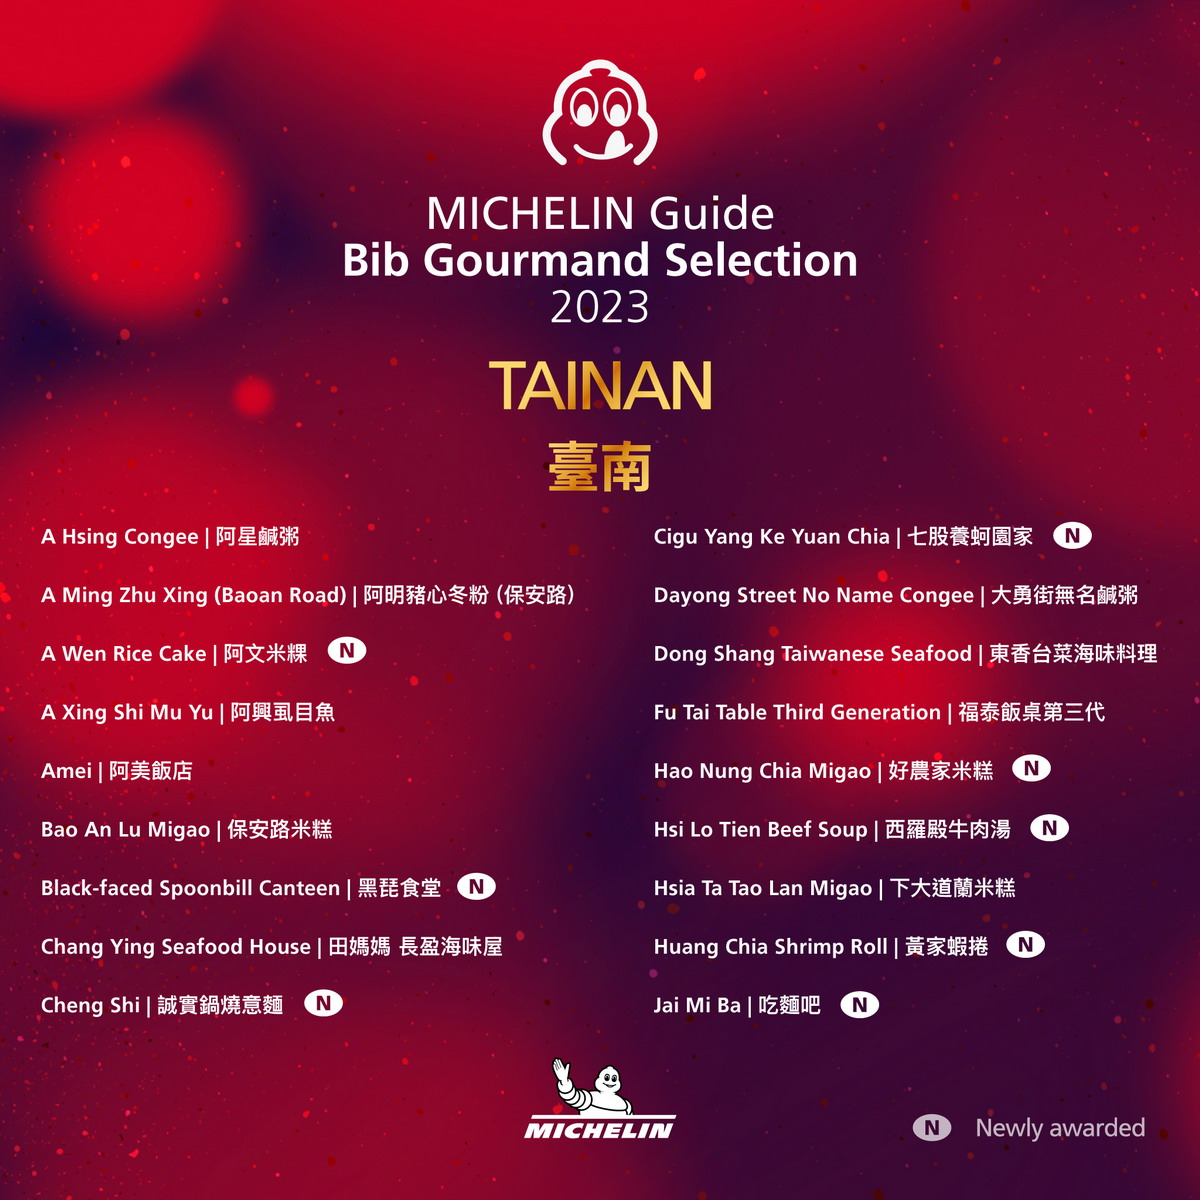 【懶人包】恭喜台灣出現三家米其林三星餐廳！頤宮、態芮與 JL Studio，台灣小吃不再受到評審特別關愛，貓大爺台灣米其林指南特輯（台北、台中、台南、高雄）2023 Michelin Guide Taipei & Taichung & Tainan & Kaohsiung 完整得獎名單及評論 5869